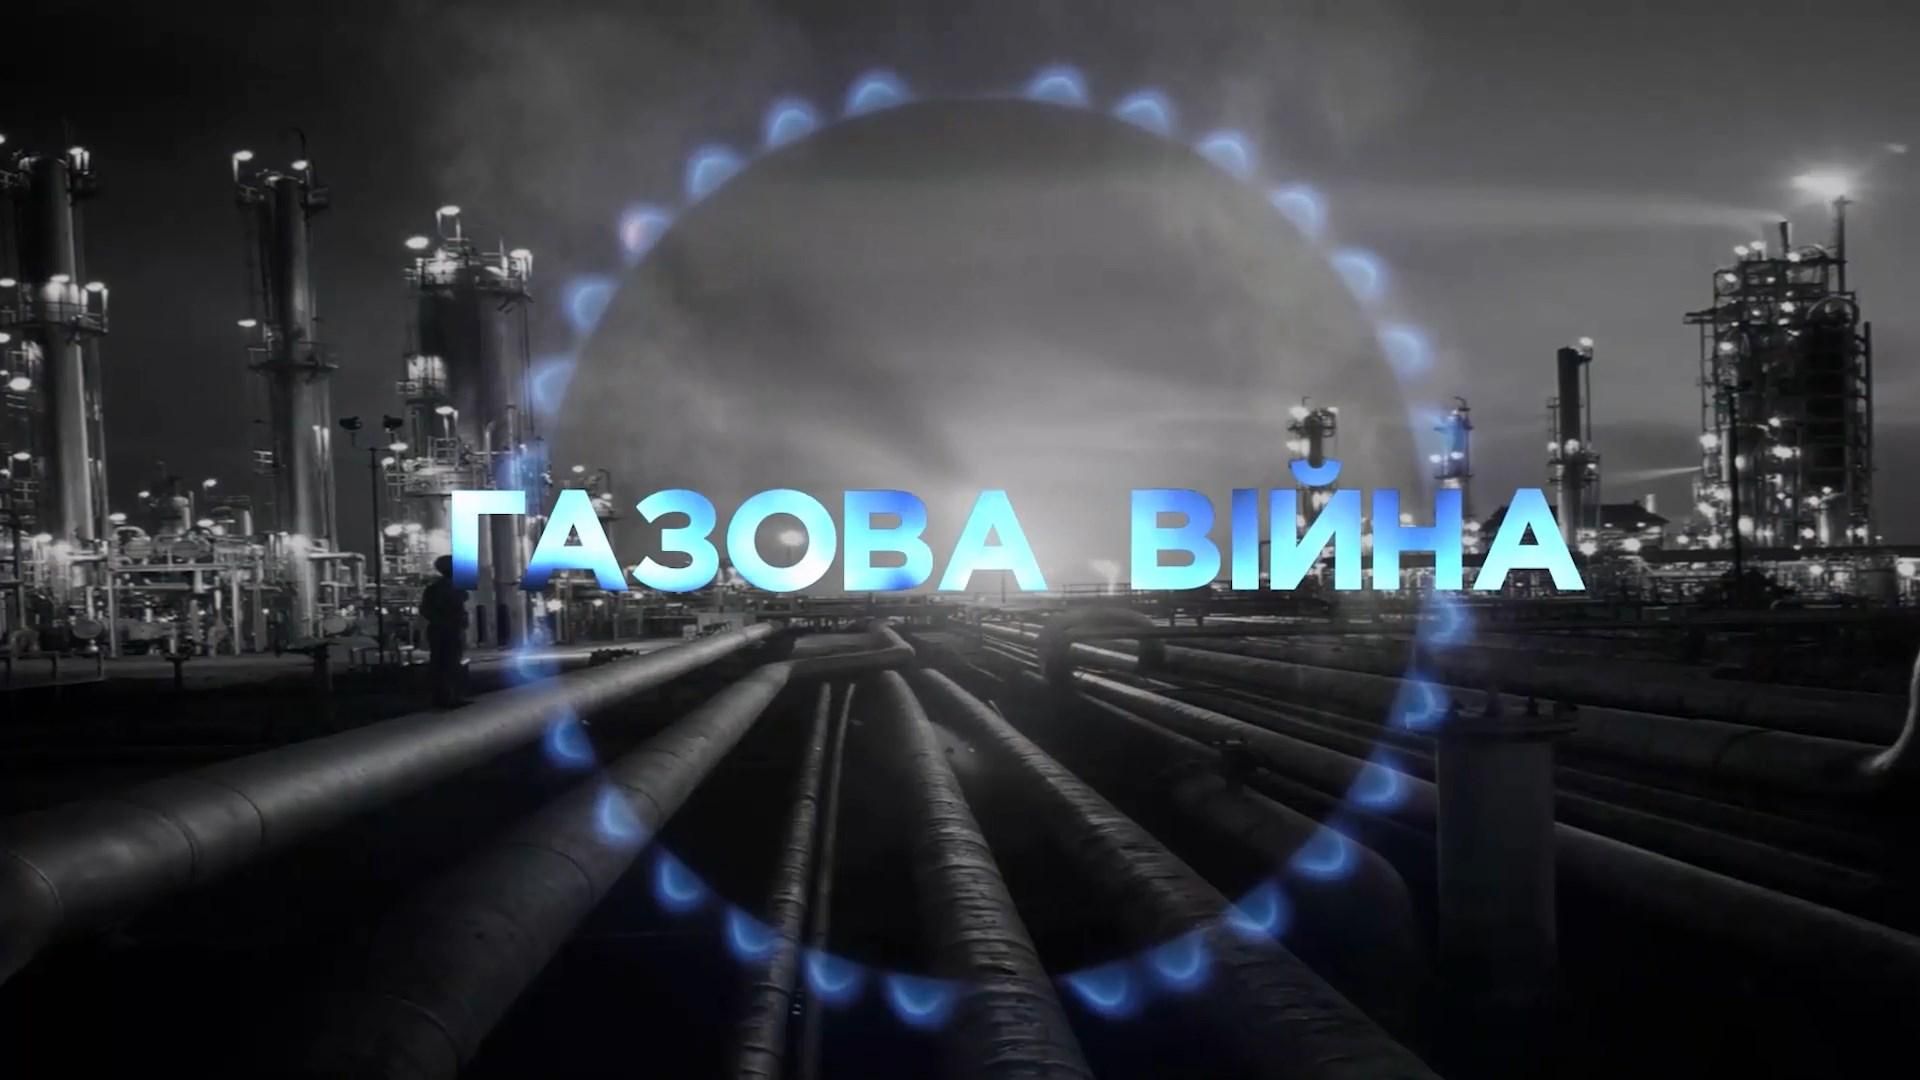 ТОП-5 тезисов по газовому конфликту между Украиной и Россией